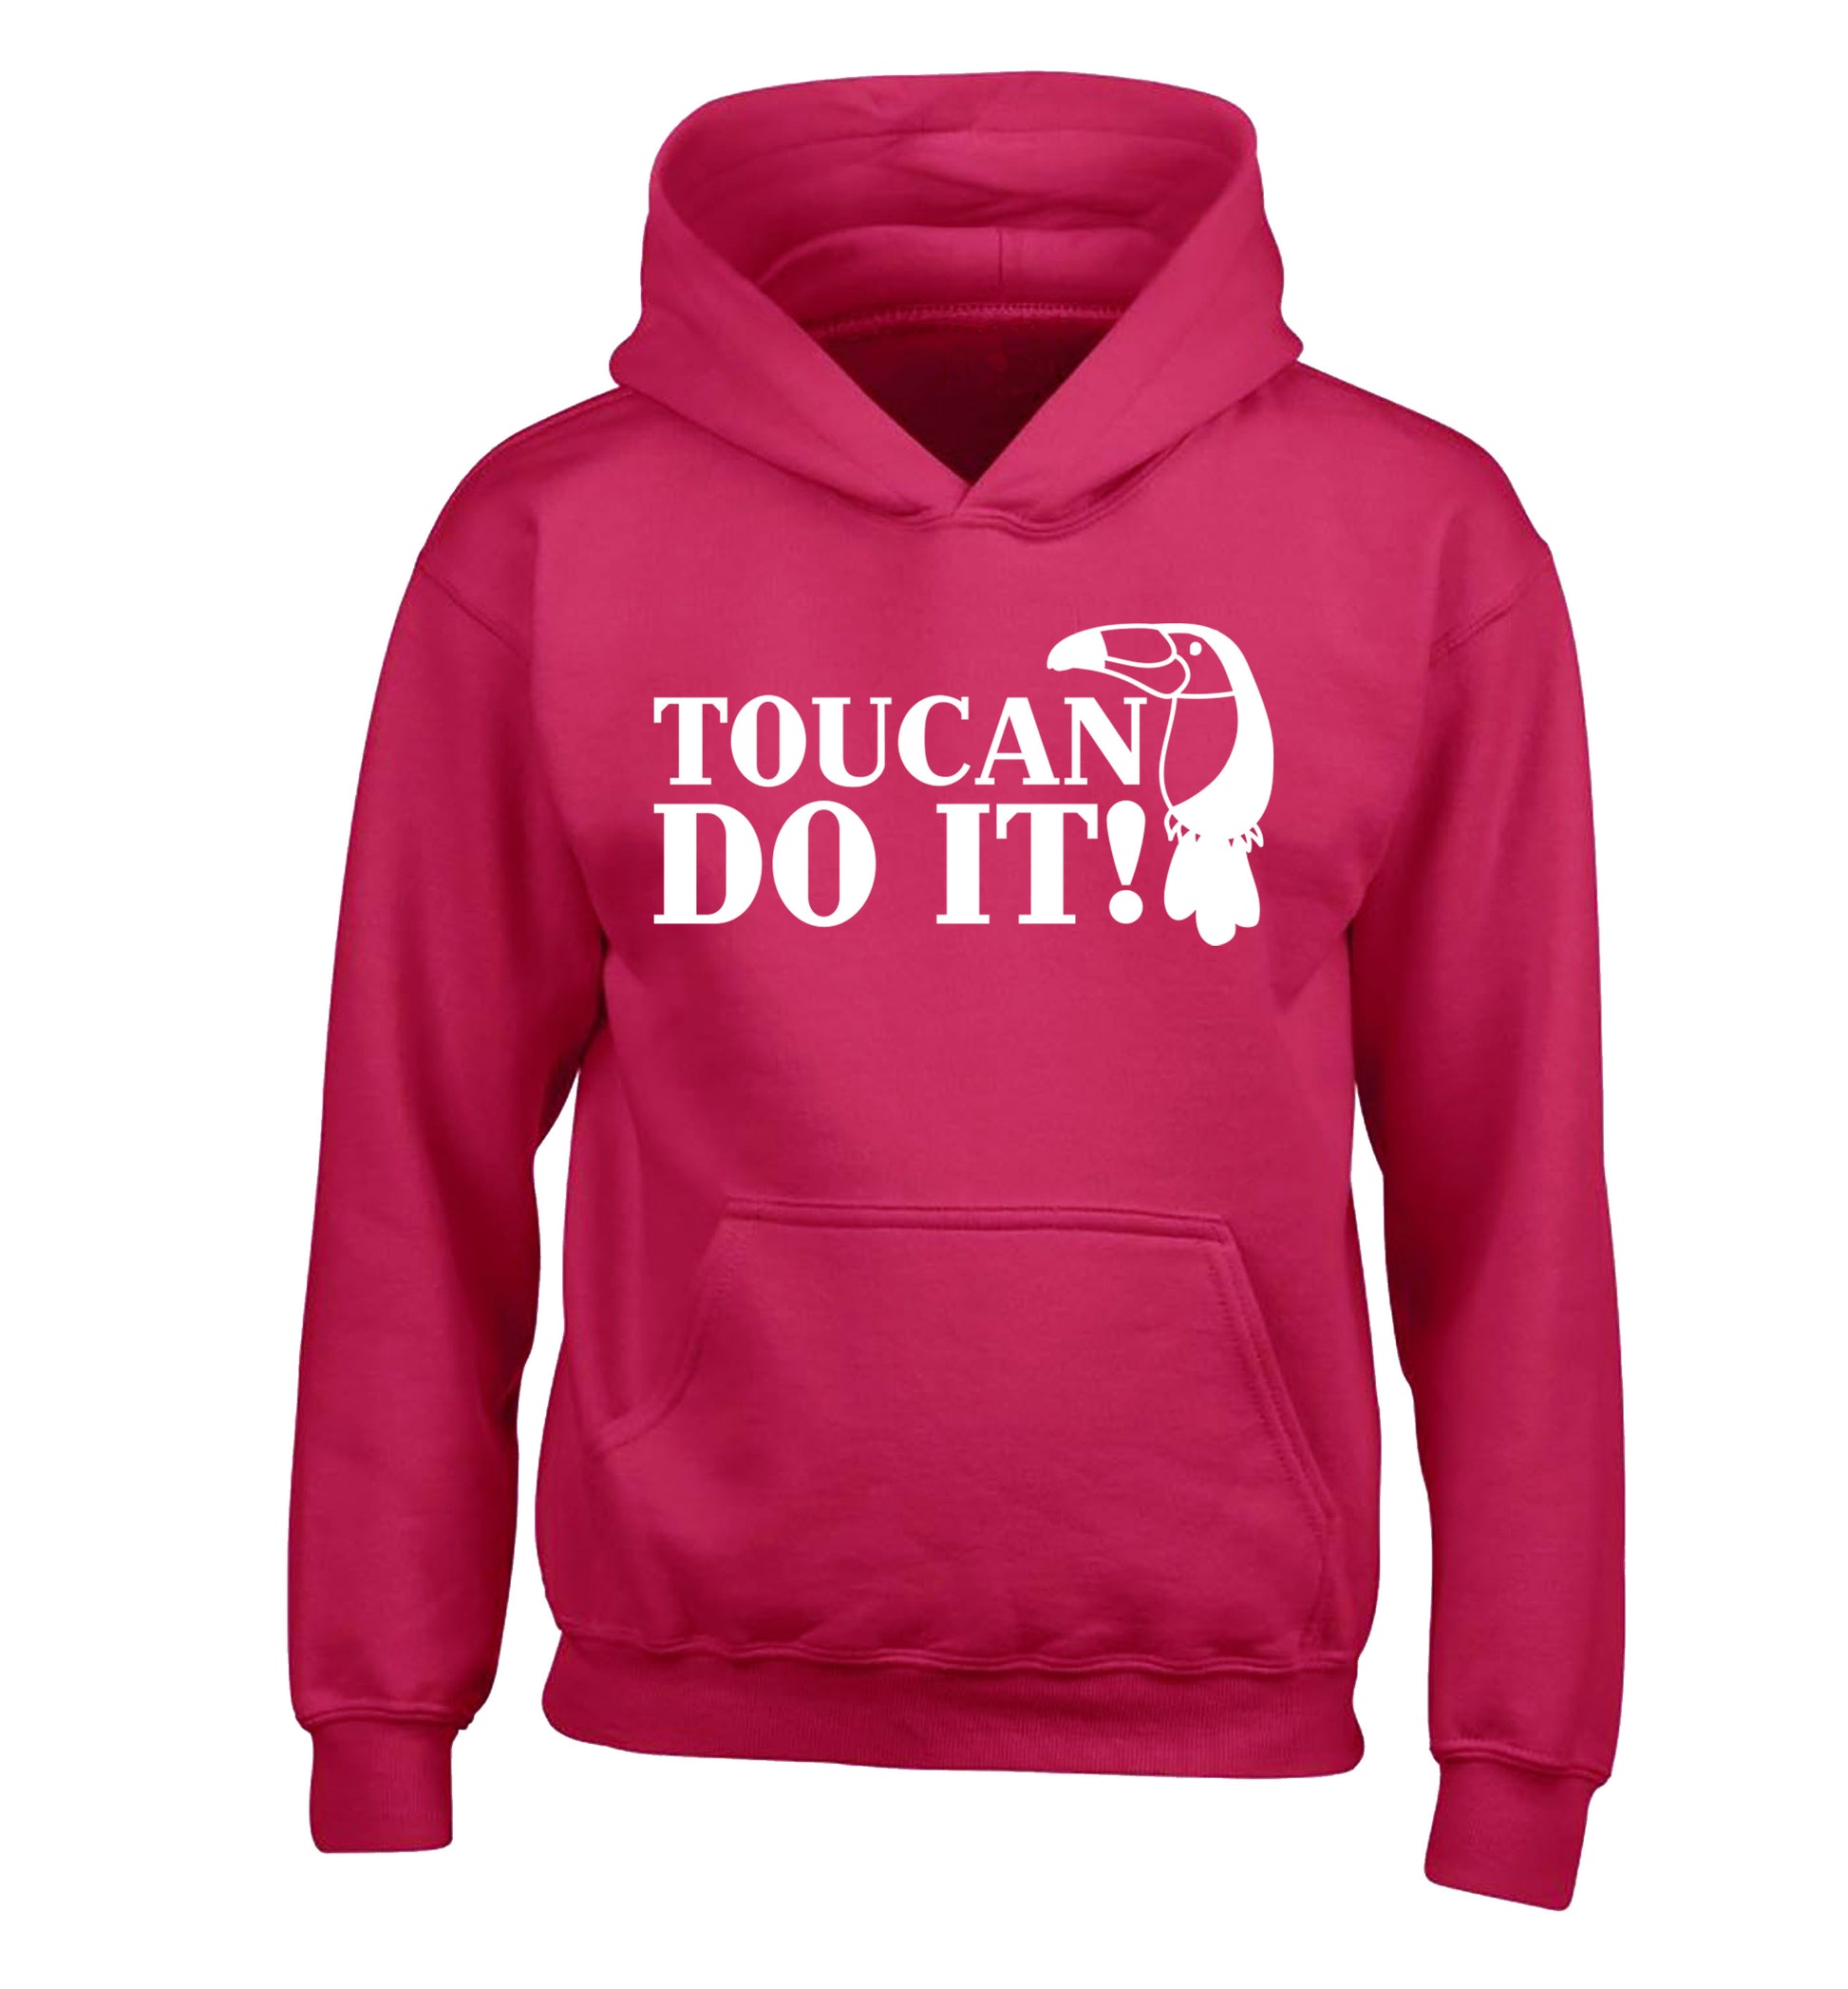 Toucan do it! children's pink hoodie 12-13 Years